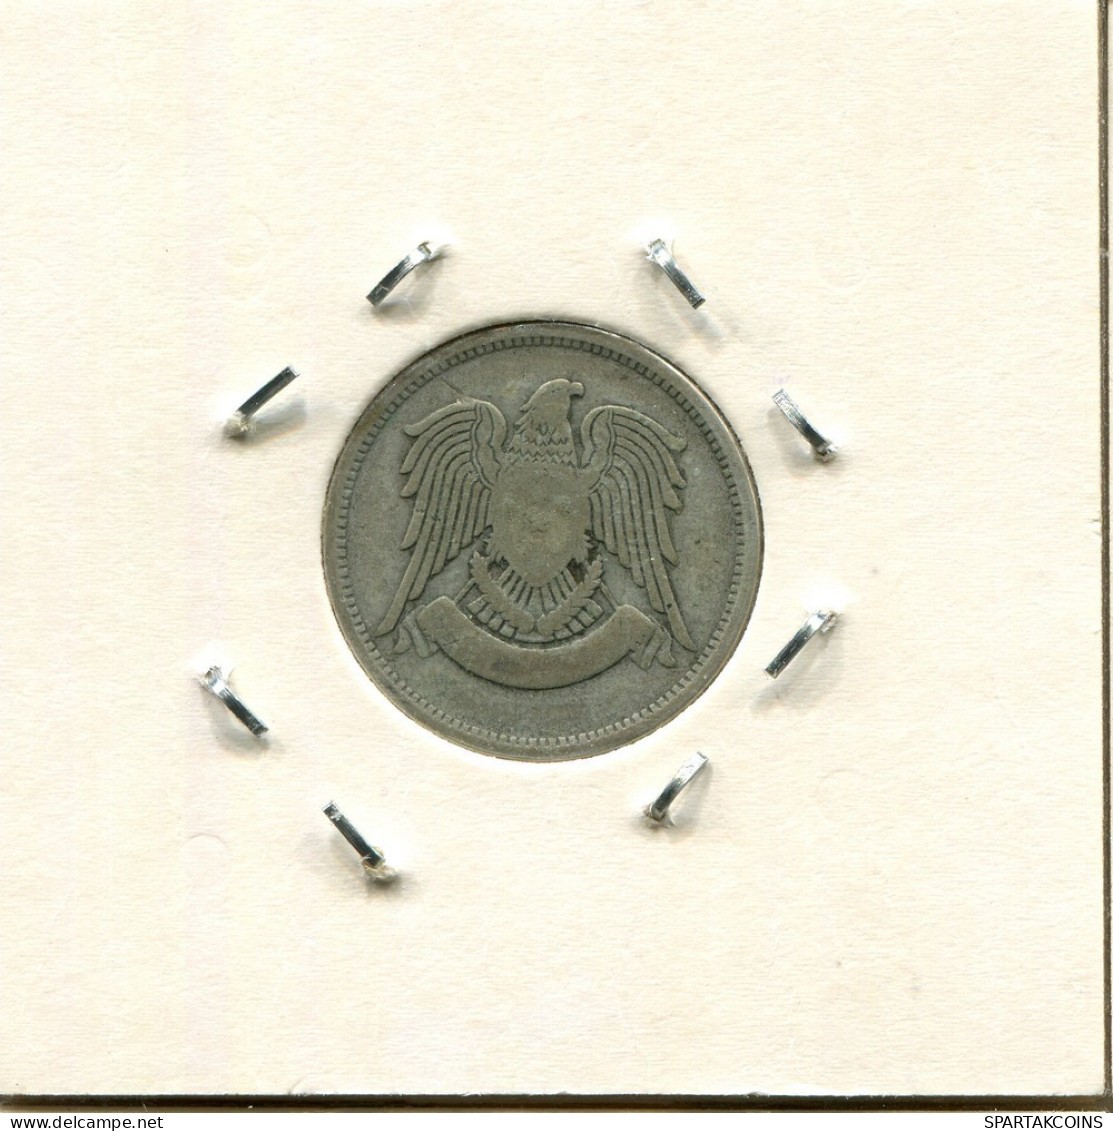 25 QIRSH 1947 SYRIA SILVER Islamic Coin #AS015.U.A - Syrie